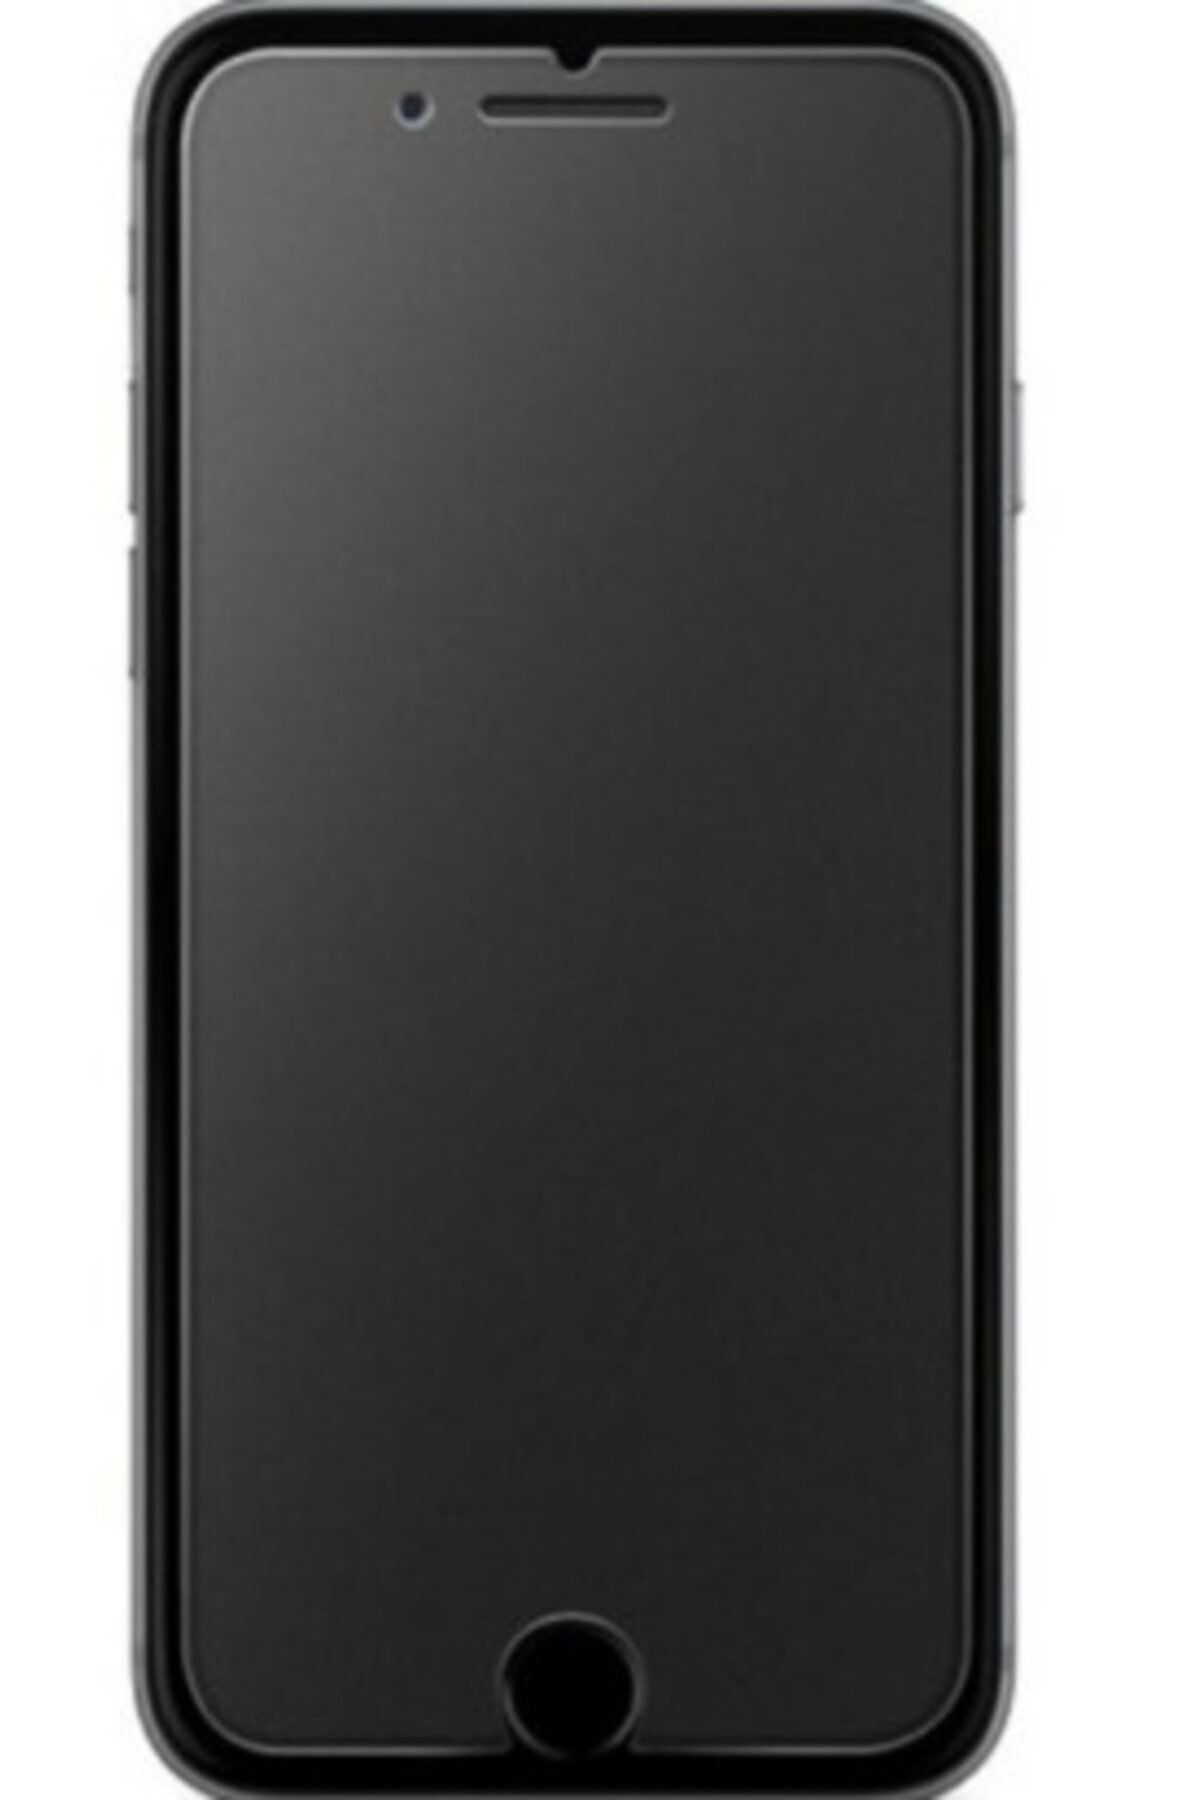 Pars Kaliteli Iphone 7 Plus Tam Kaplayan Parmak Izi Bırakmayan Mat Ekran Koruyucu Nano Jelatin